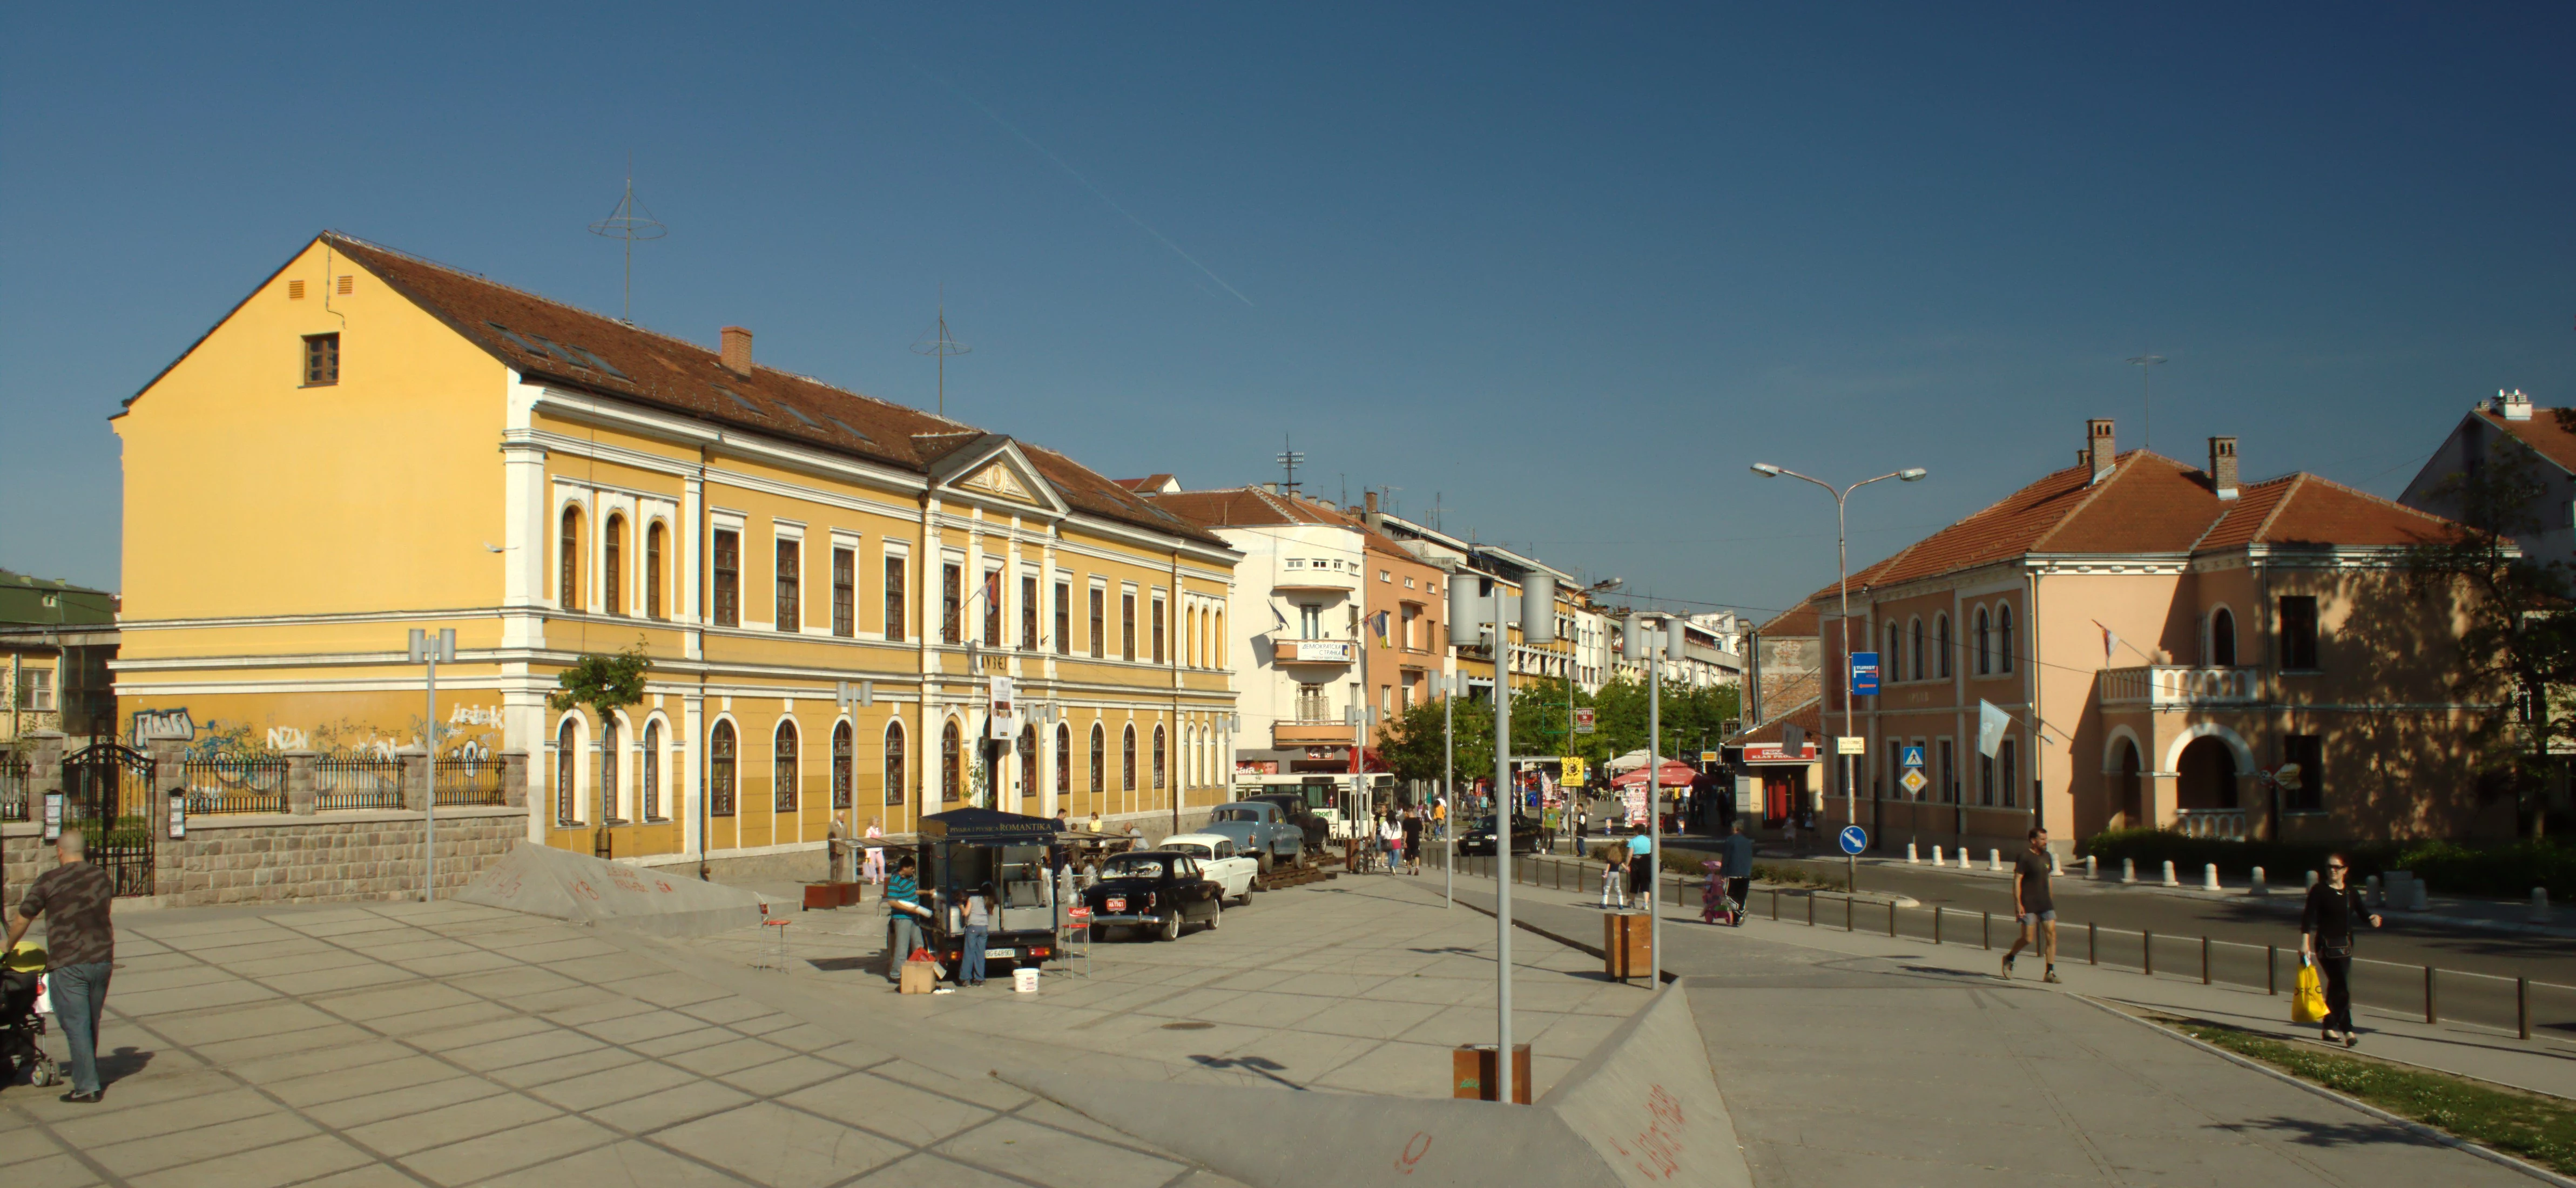 Kraljevo je grad u Srbiji u Raskom okrugu, u blizini Vrnjacke Banje